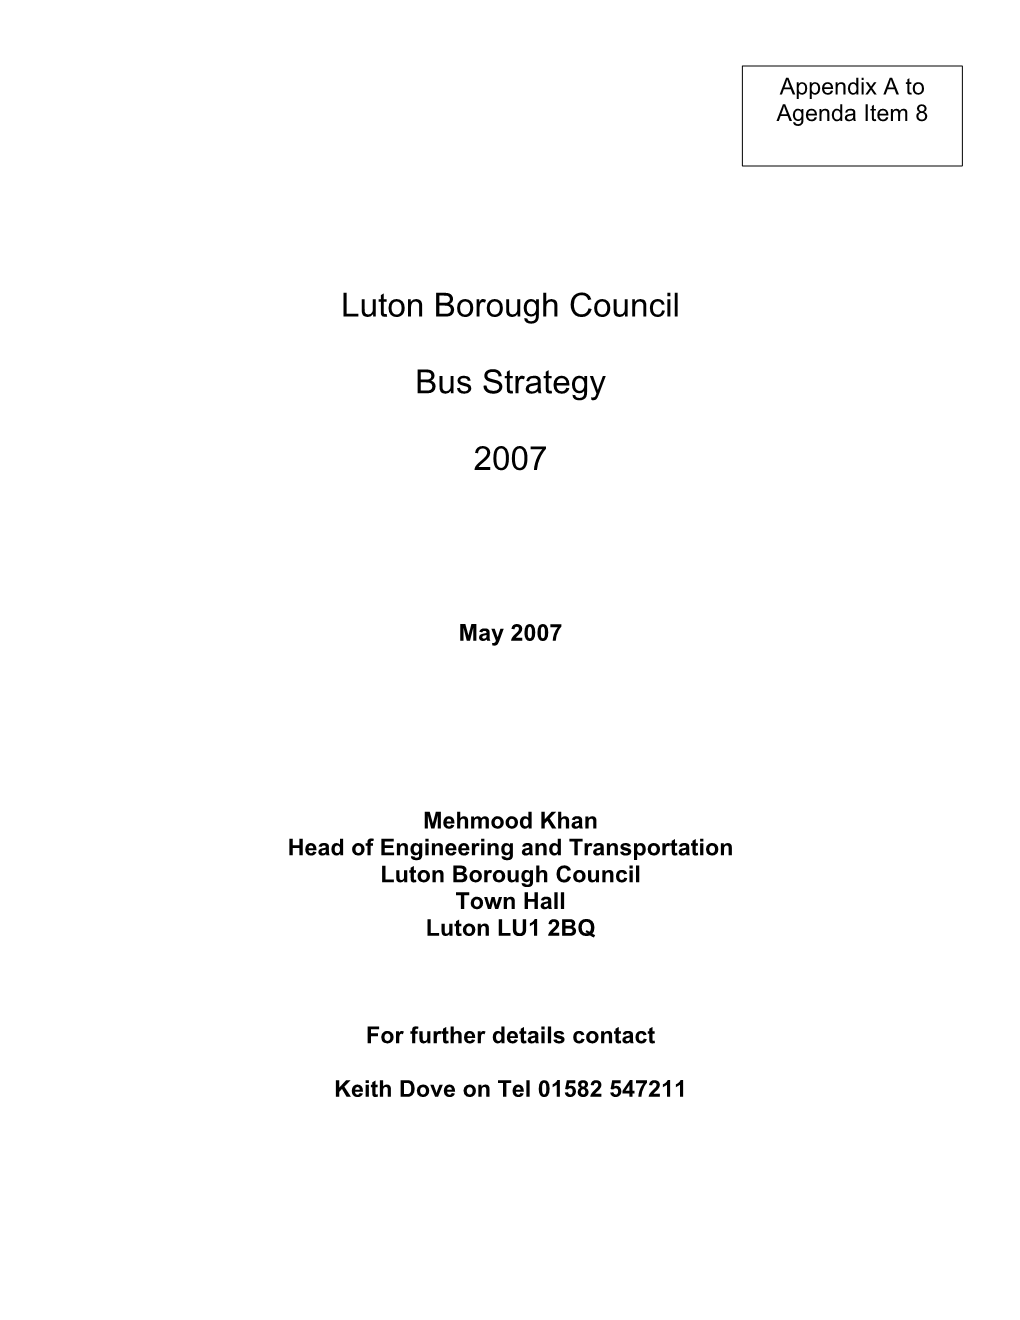 Luton Borough Council Bus Strategy 2007